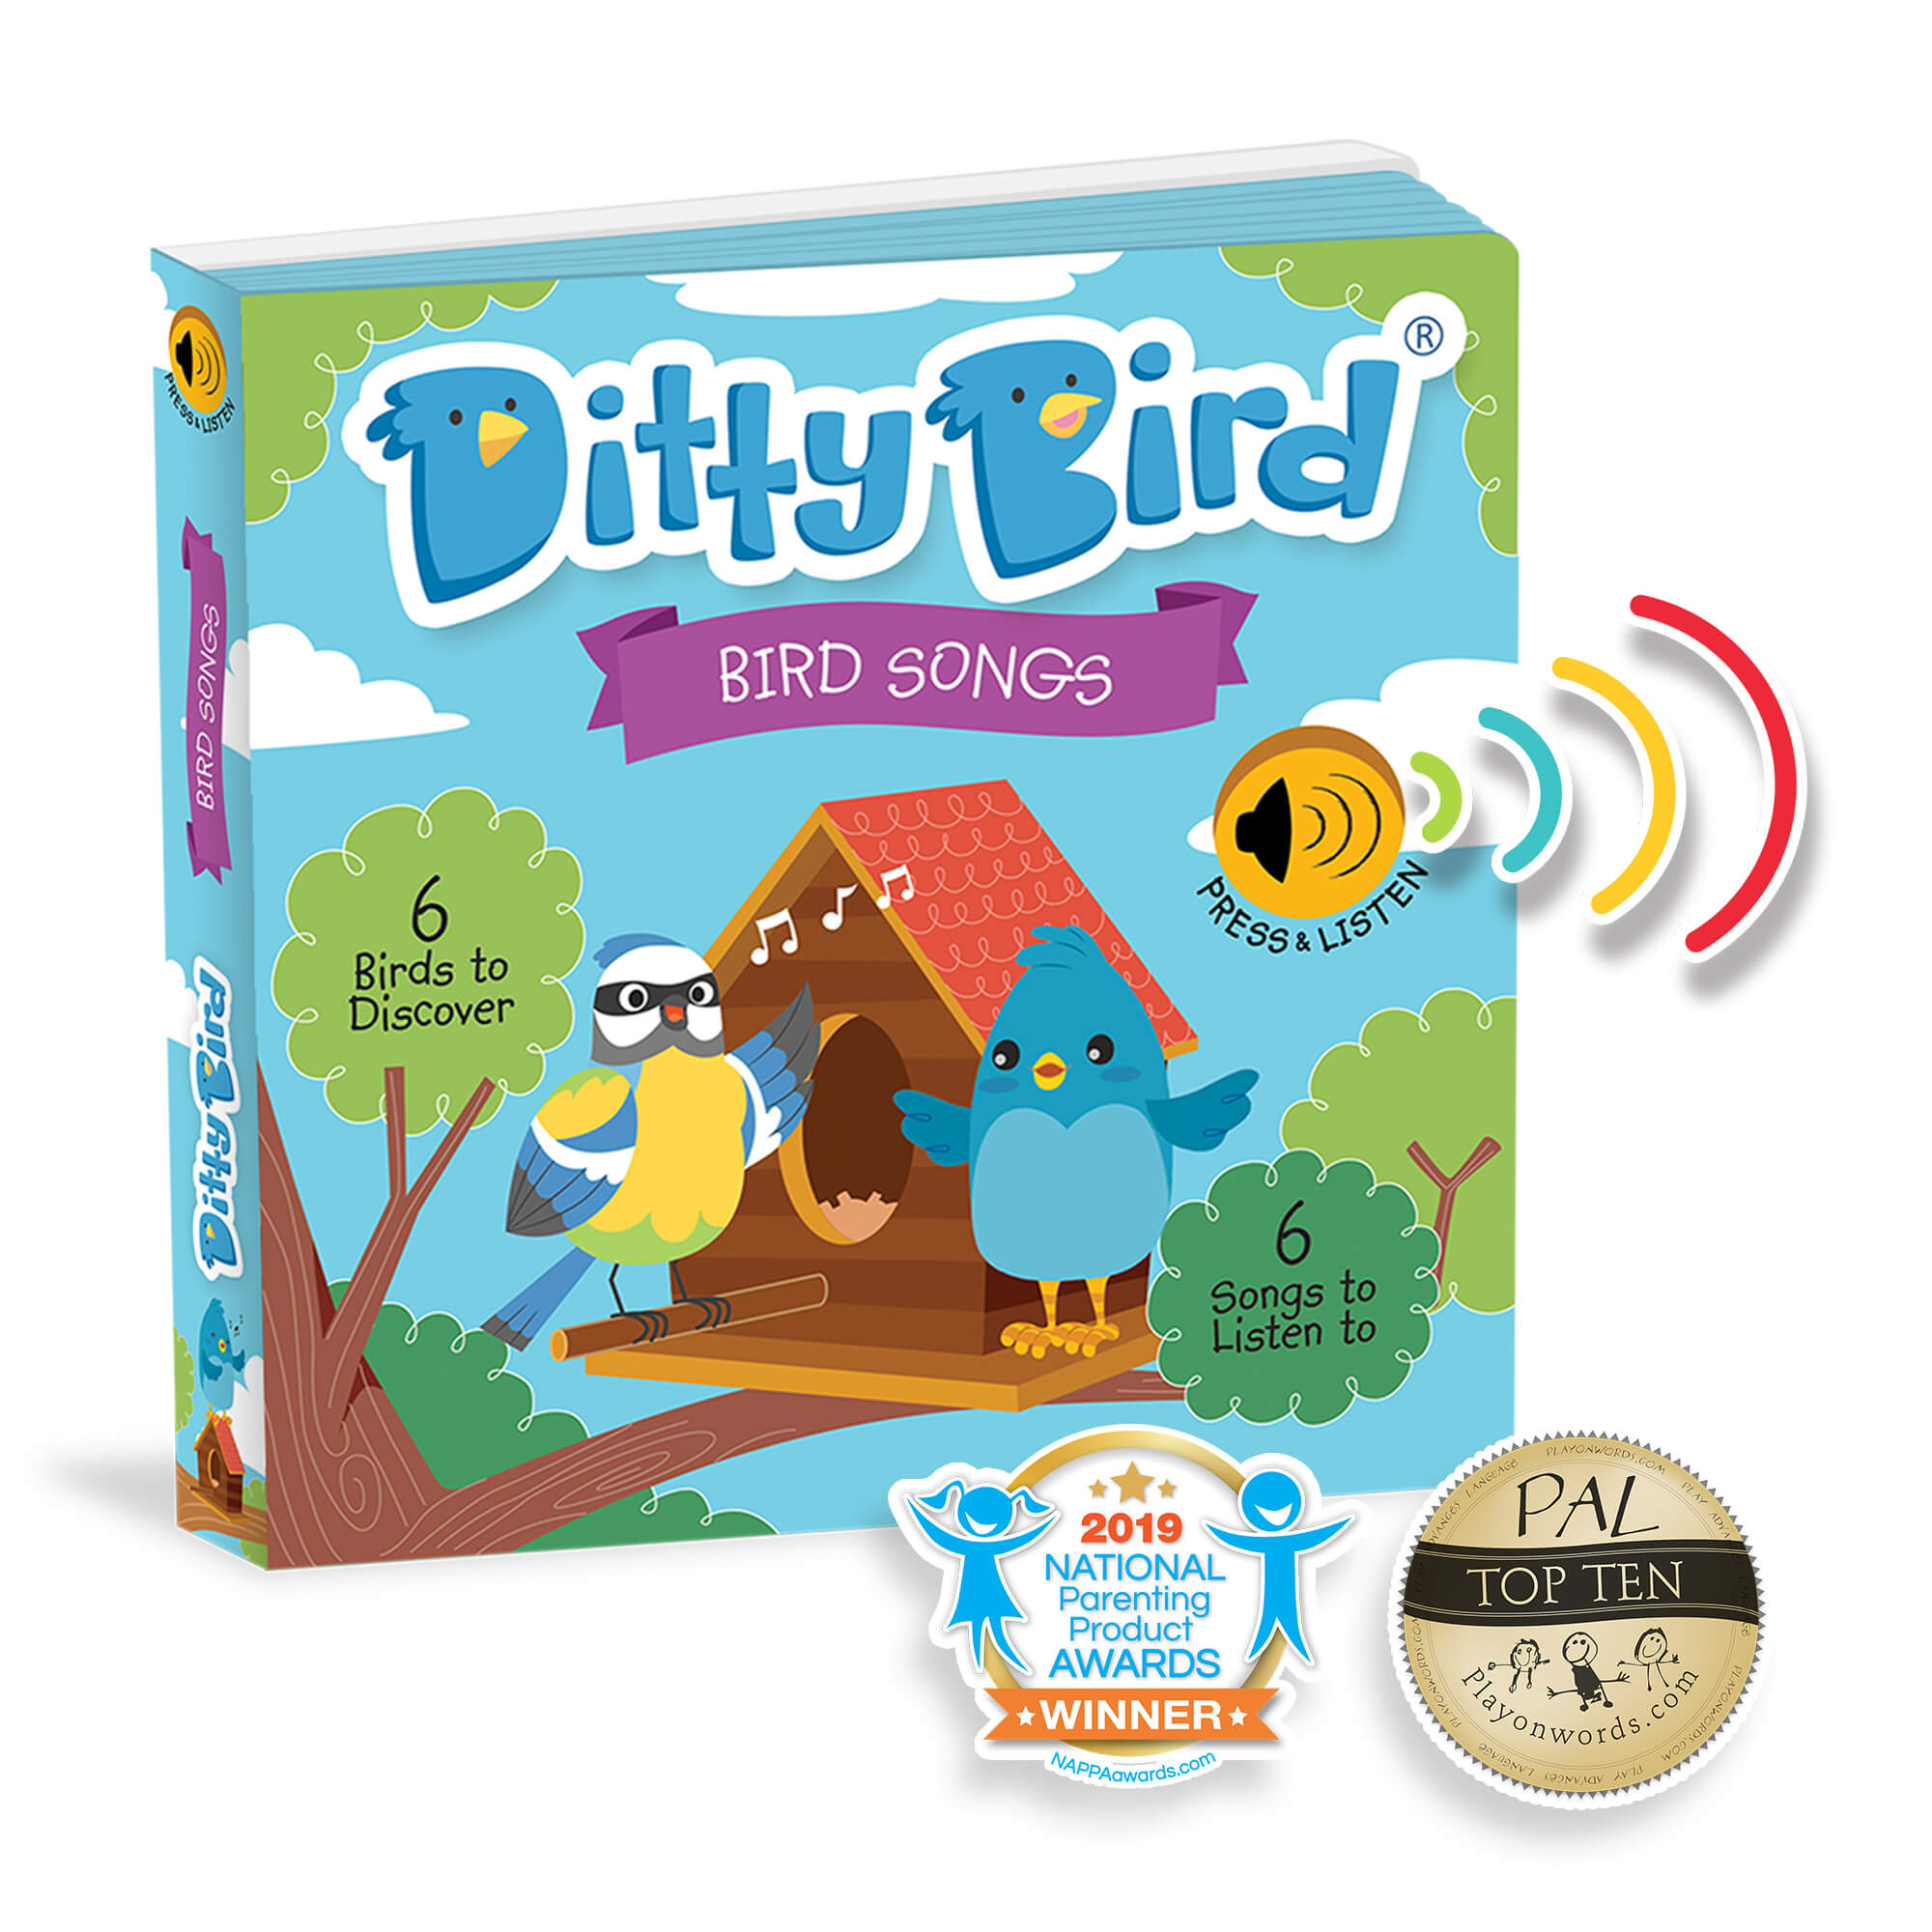 Ditty Bird, Bird Songs, Interactive musical song book